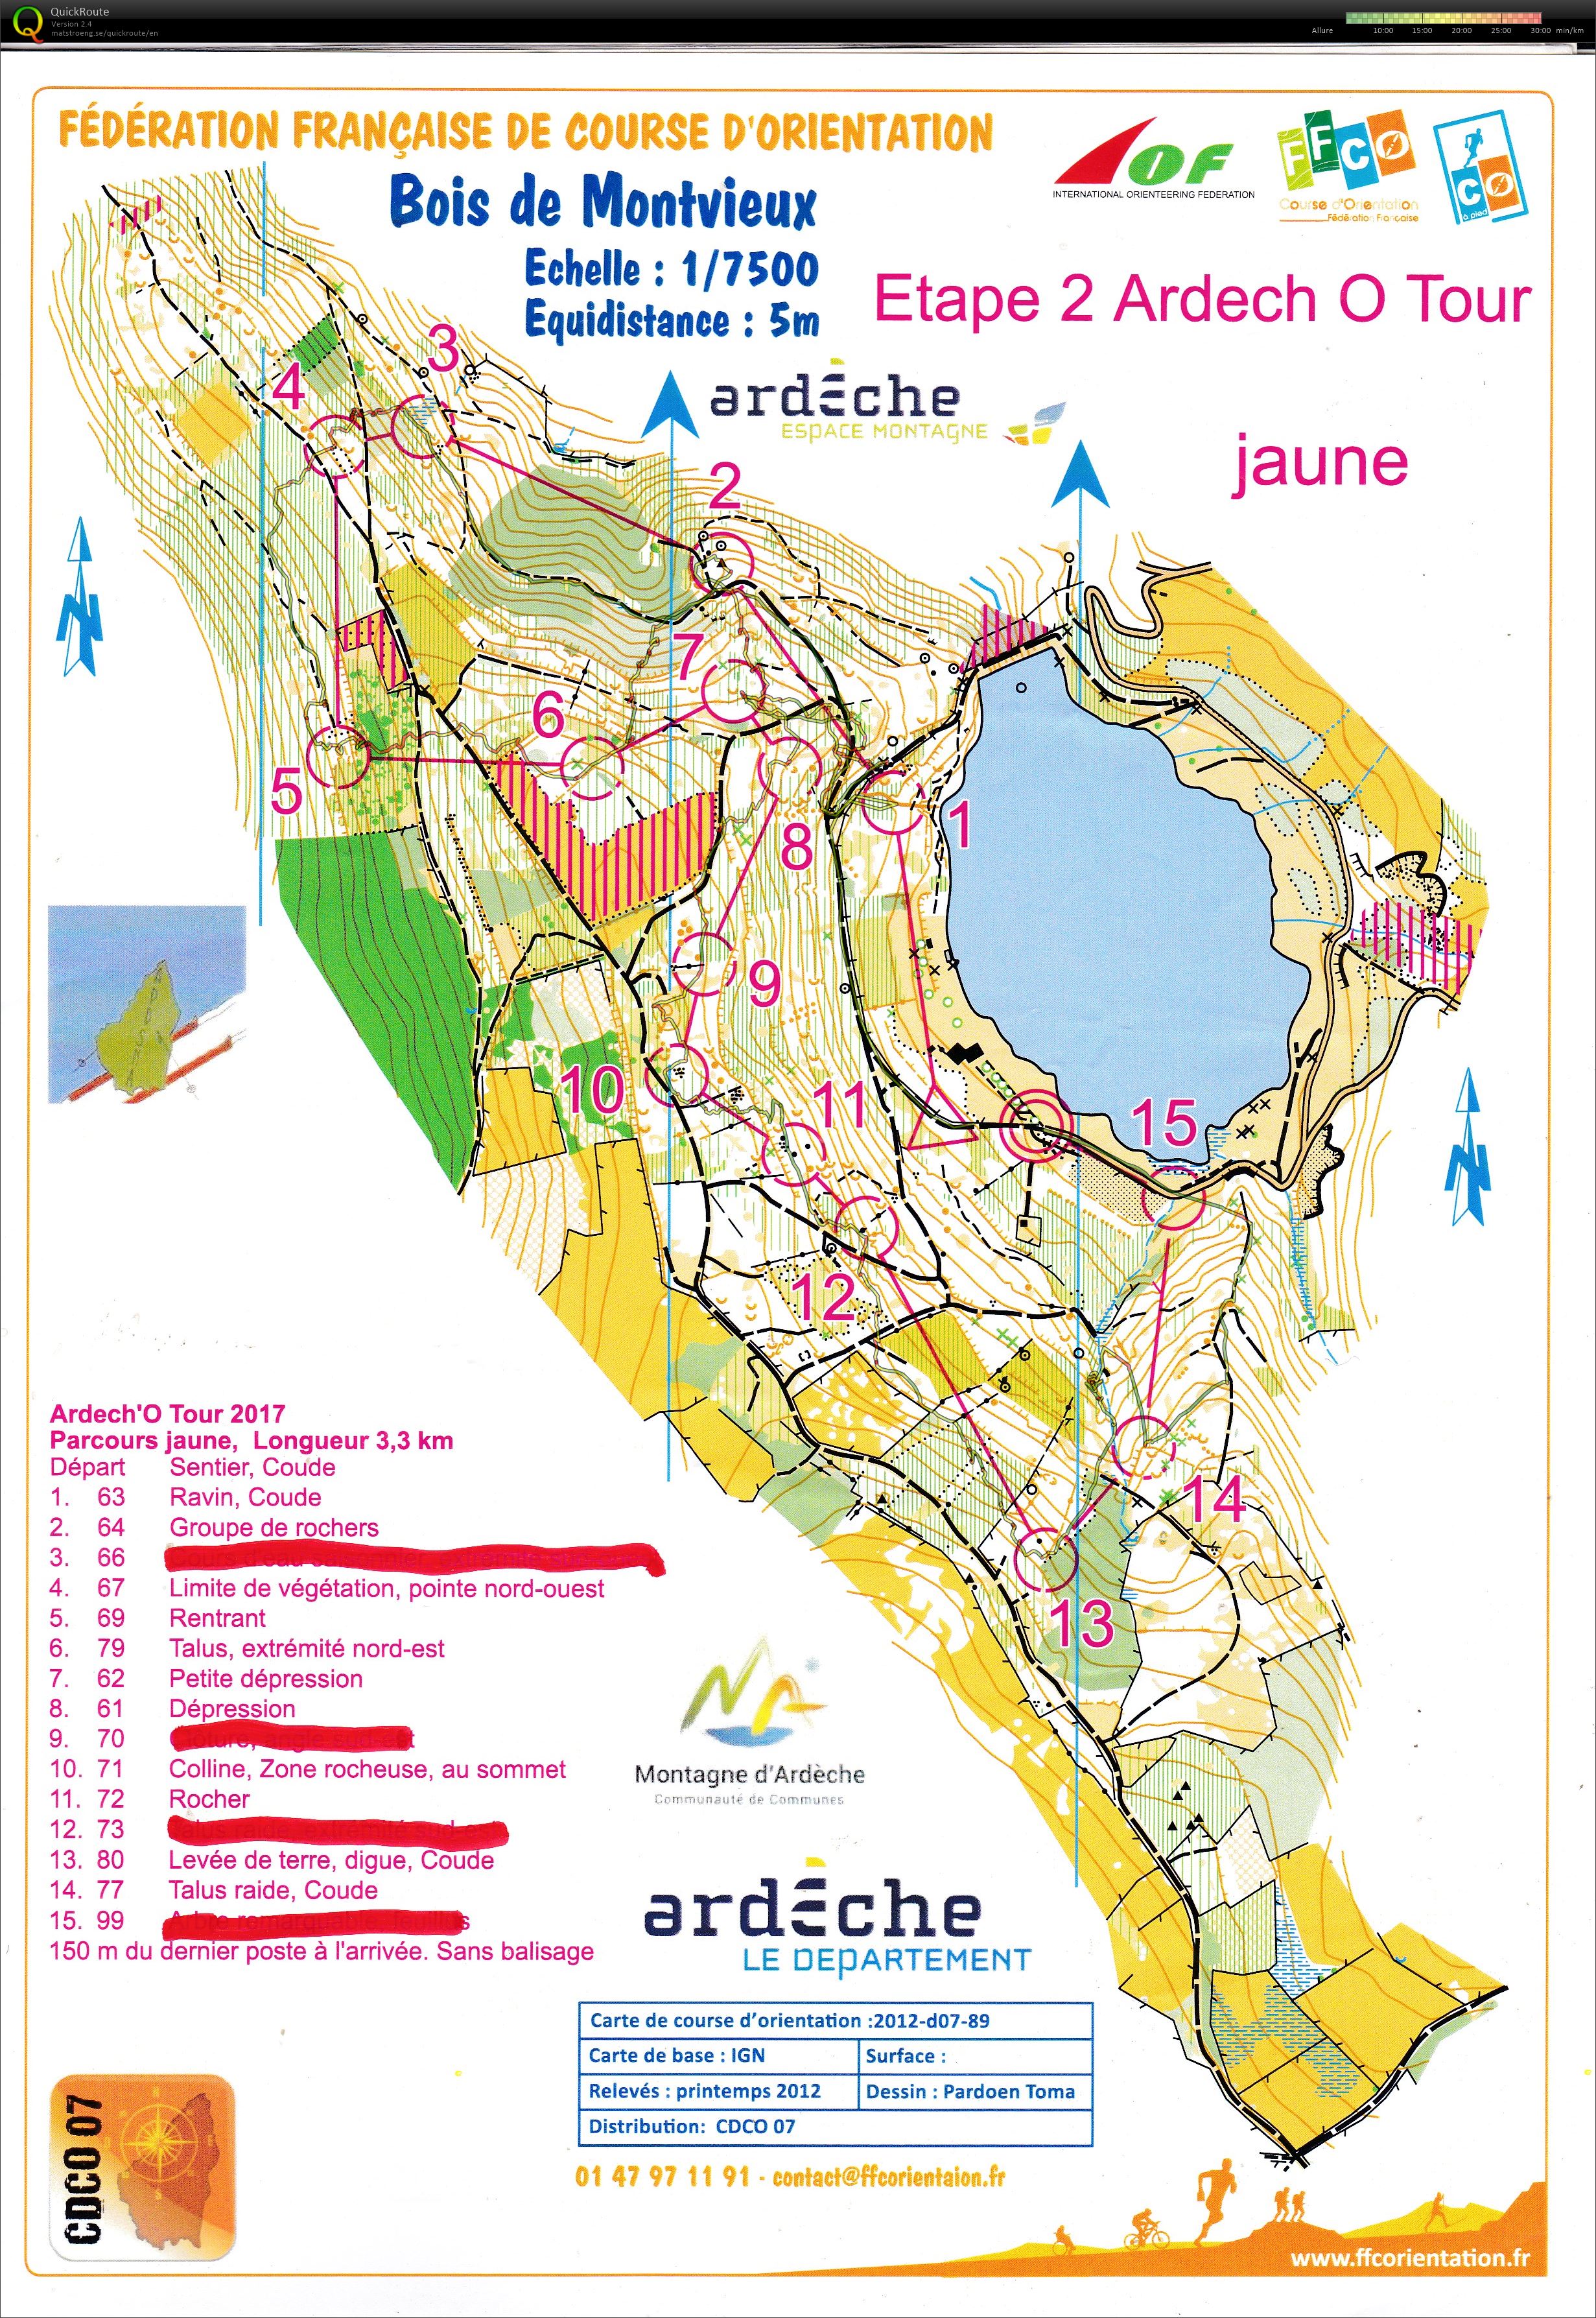 Ardèche'O Tour - Coucouron (27.07.2019)